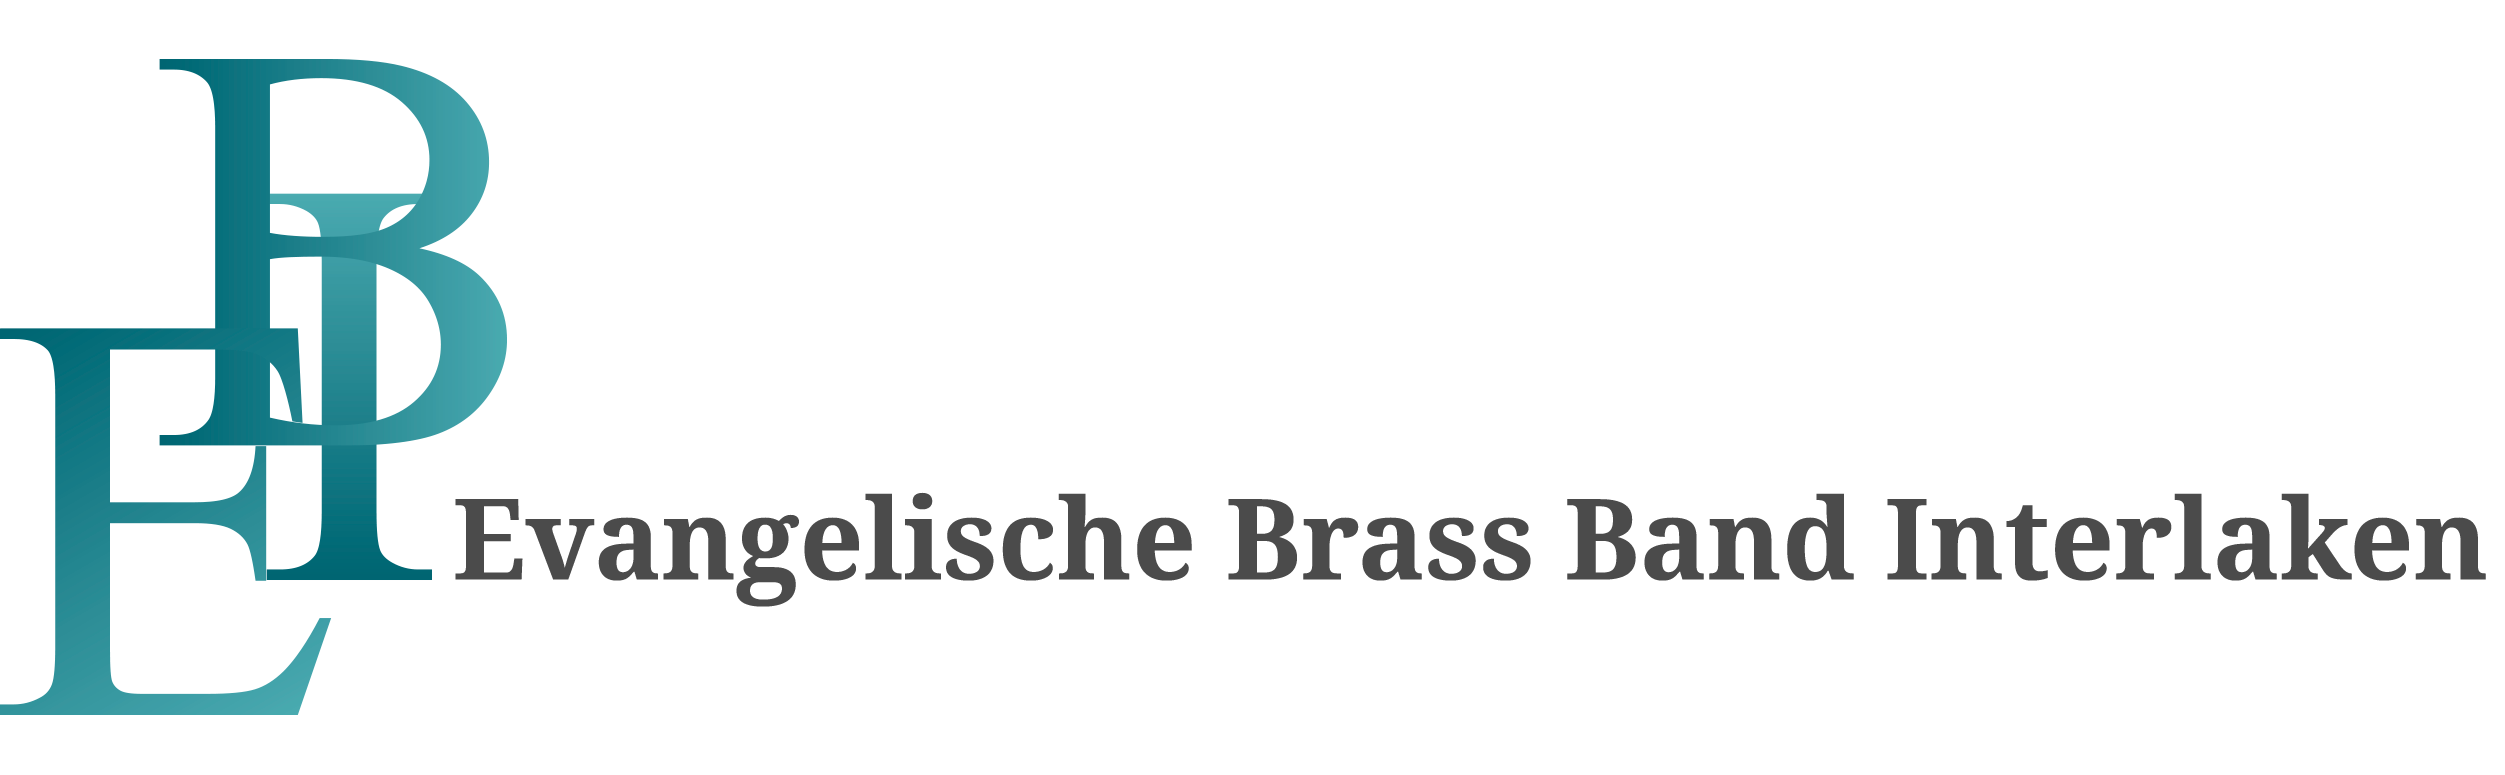 Evangelische Brass Band Interlaken